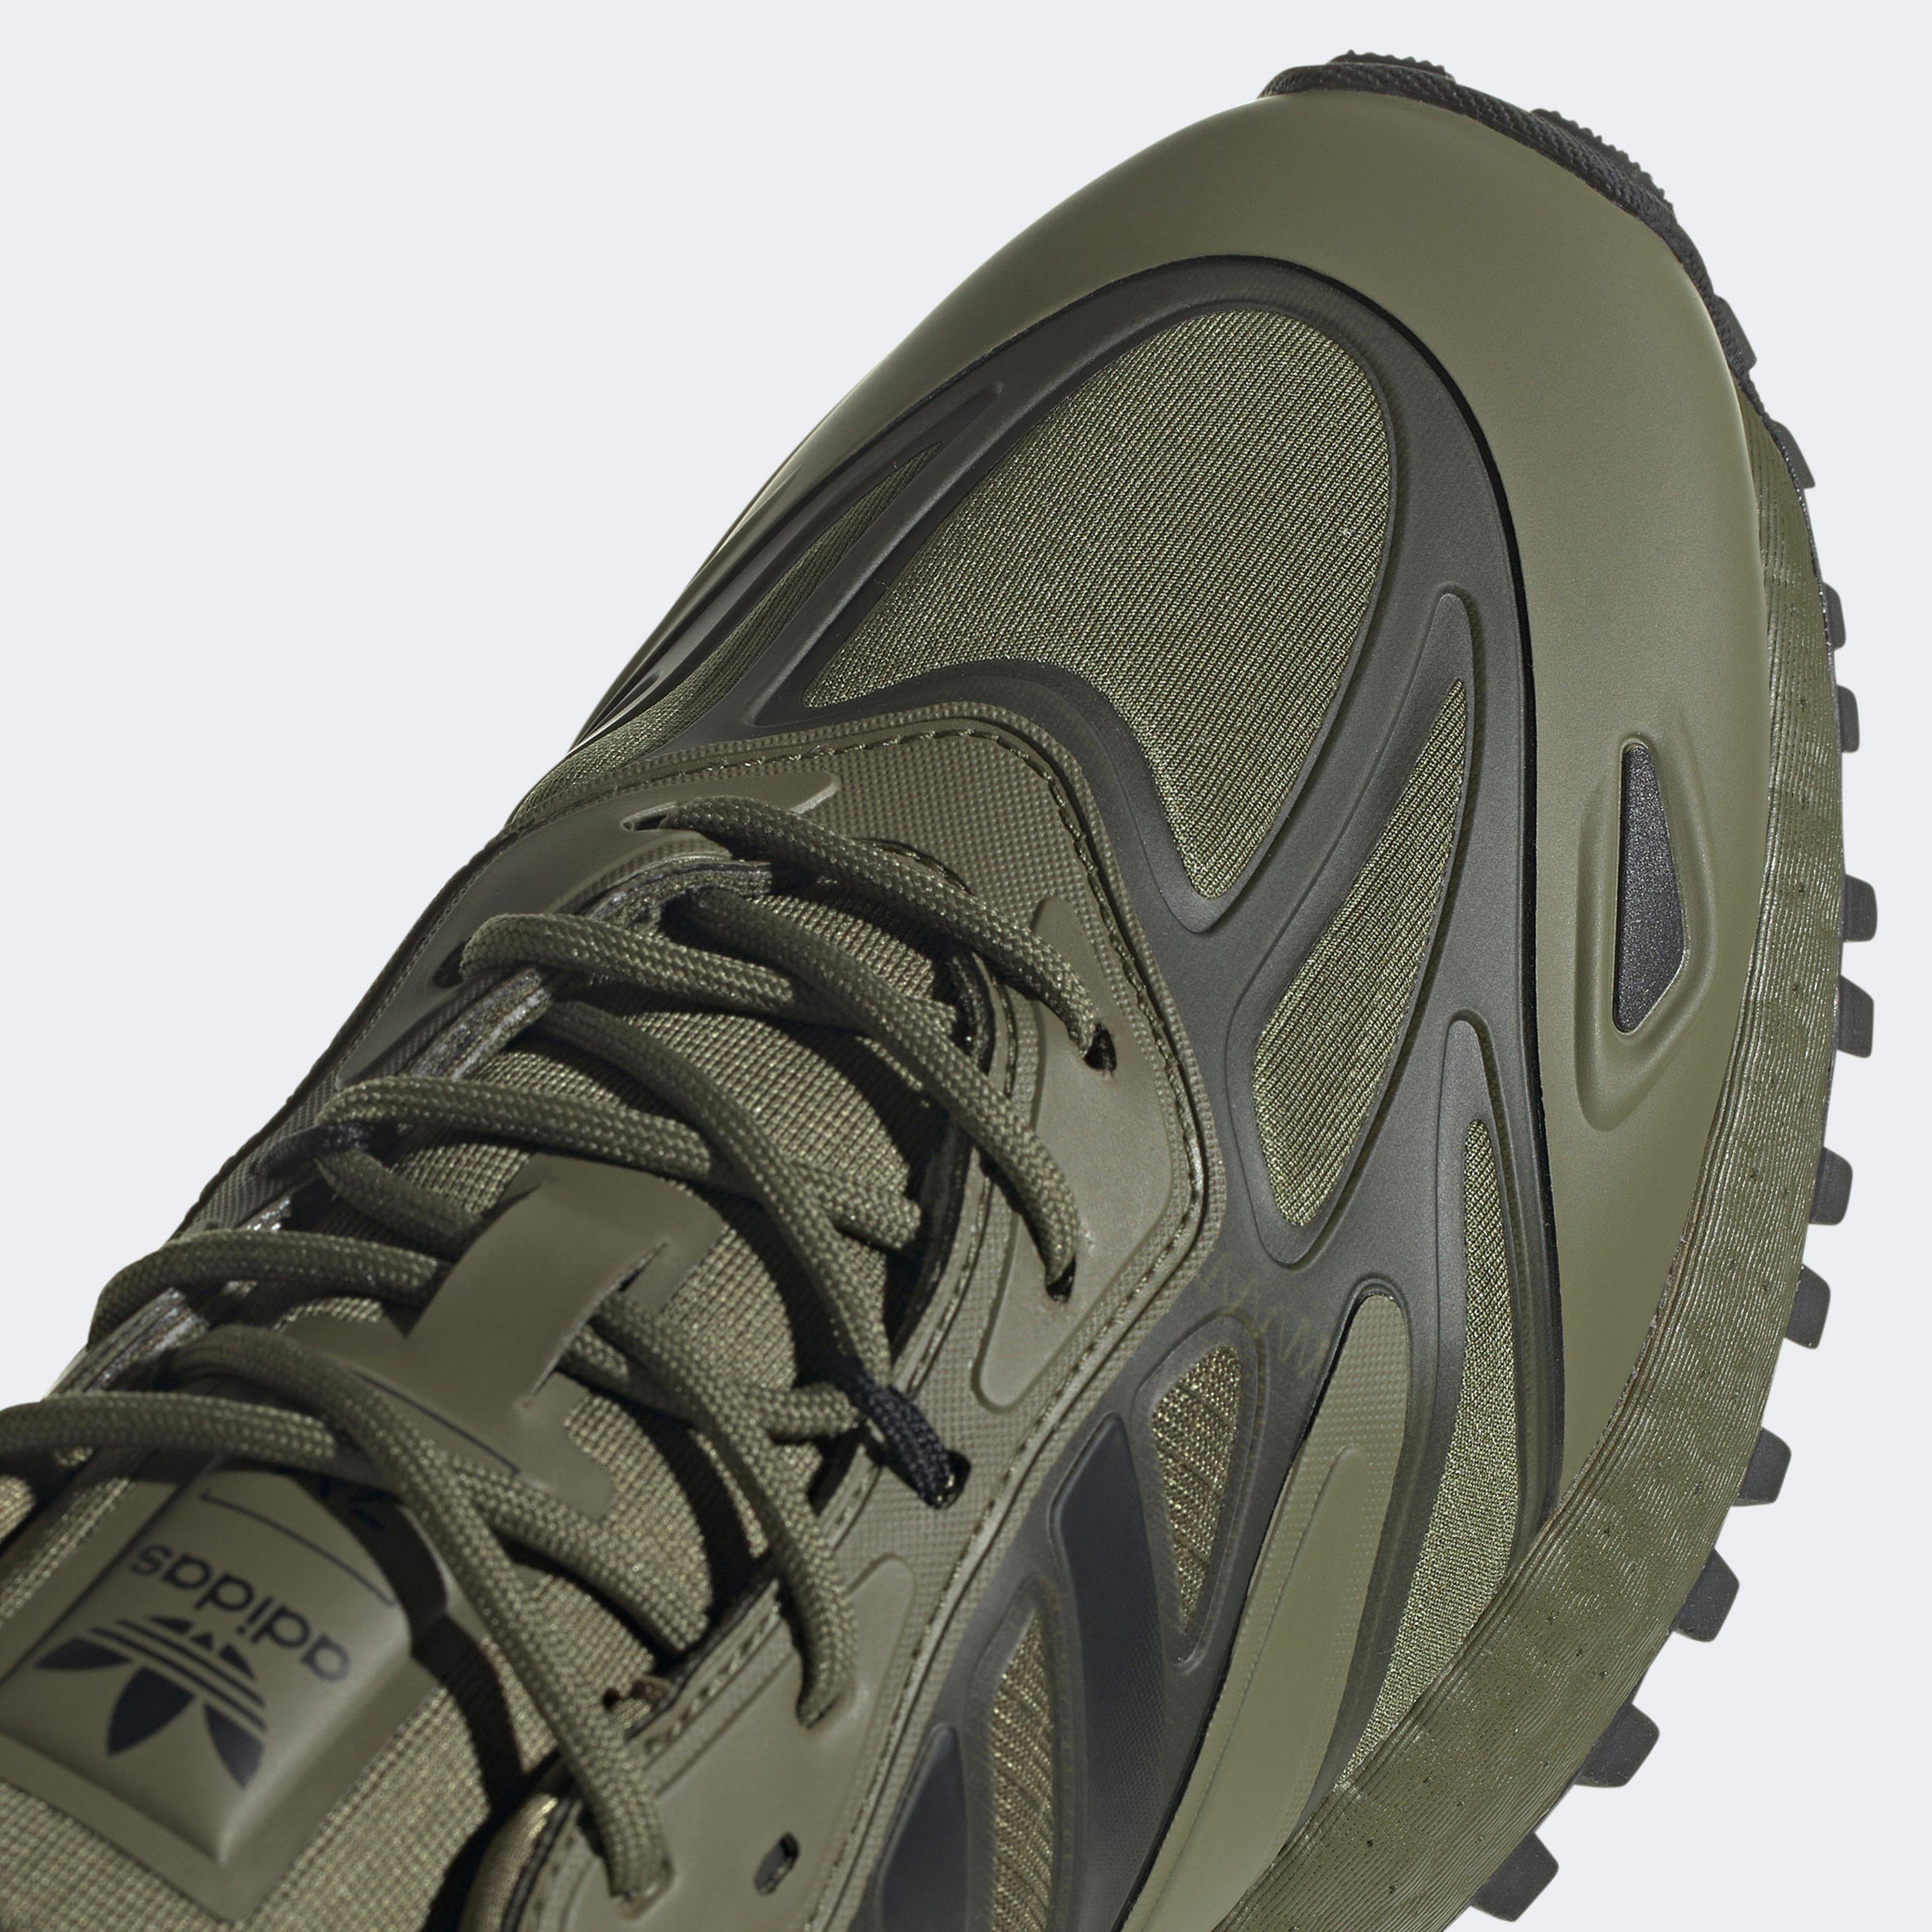 adidas Zx 2K Boost 2.0 Trail Erkek Yeşil Spor Ayakkabı